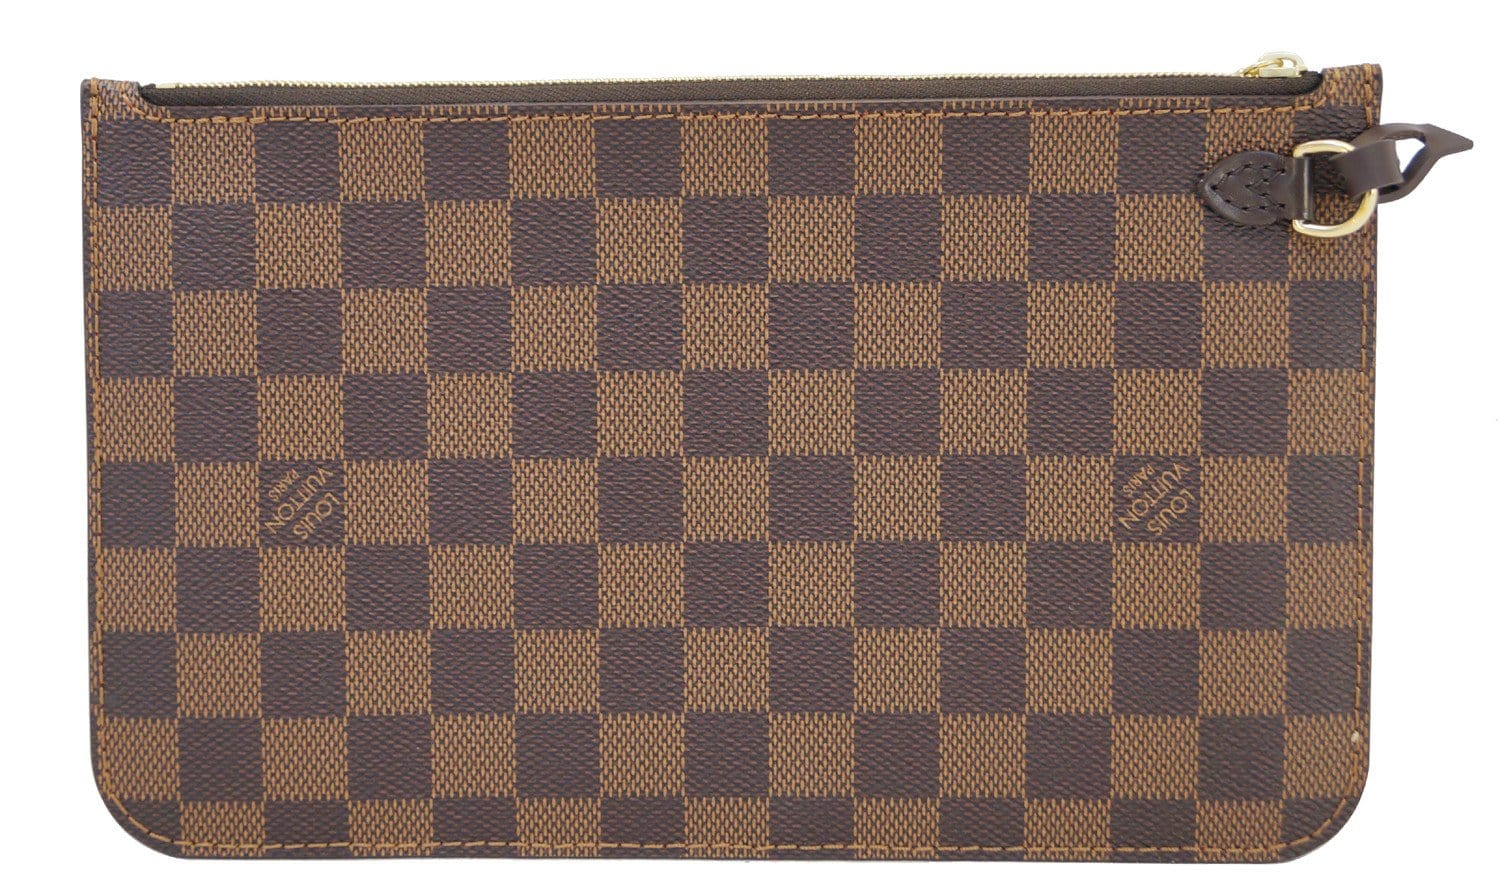 Louis Vuitton Poche-documents Clutch 359682